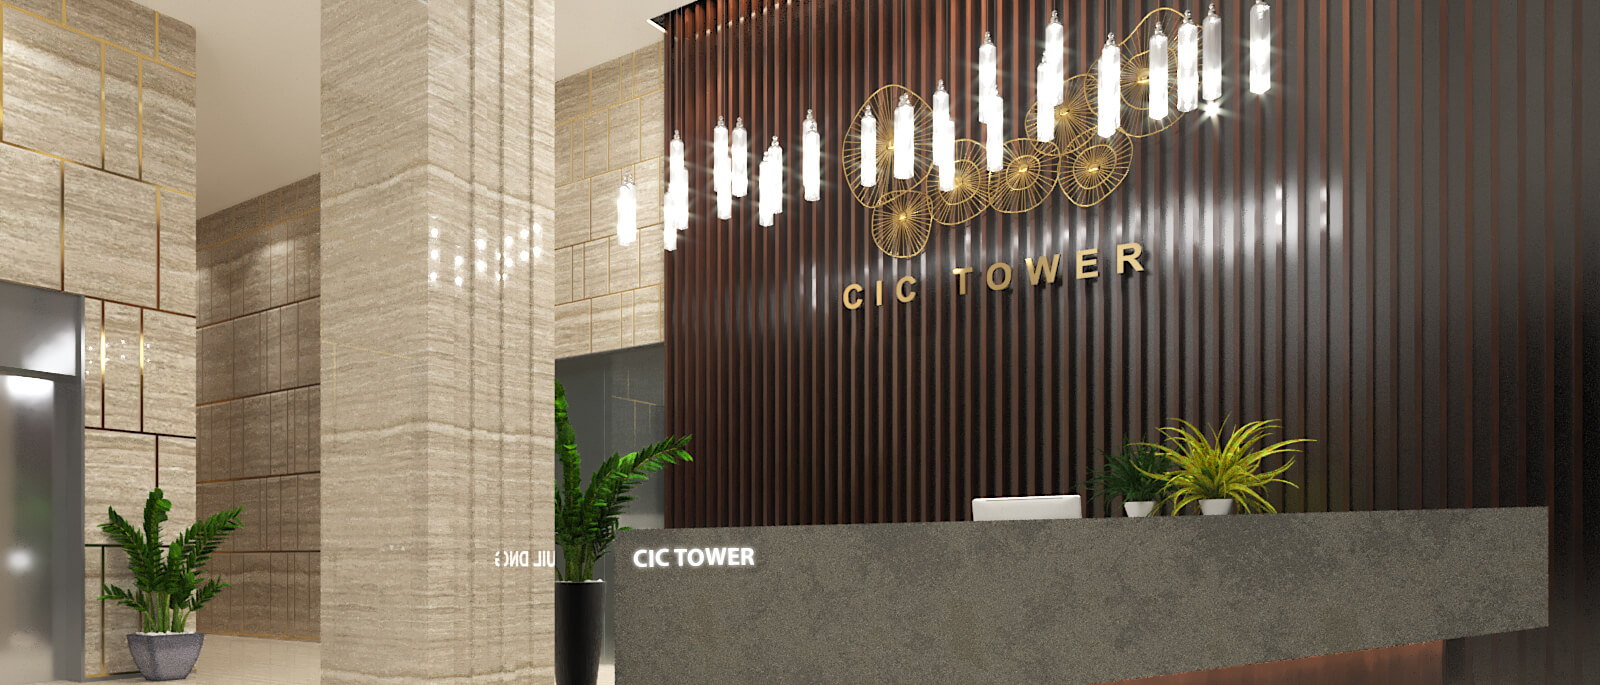 Cho thuê văn phòng quận Cầu Giấy - Tòa CIC Tower, DT 195m2, giá tốt nhất phố Trung Kính.